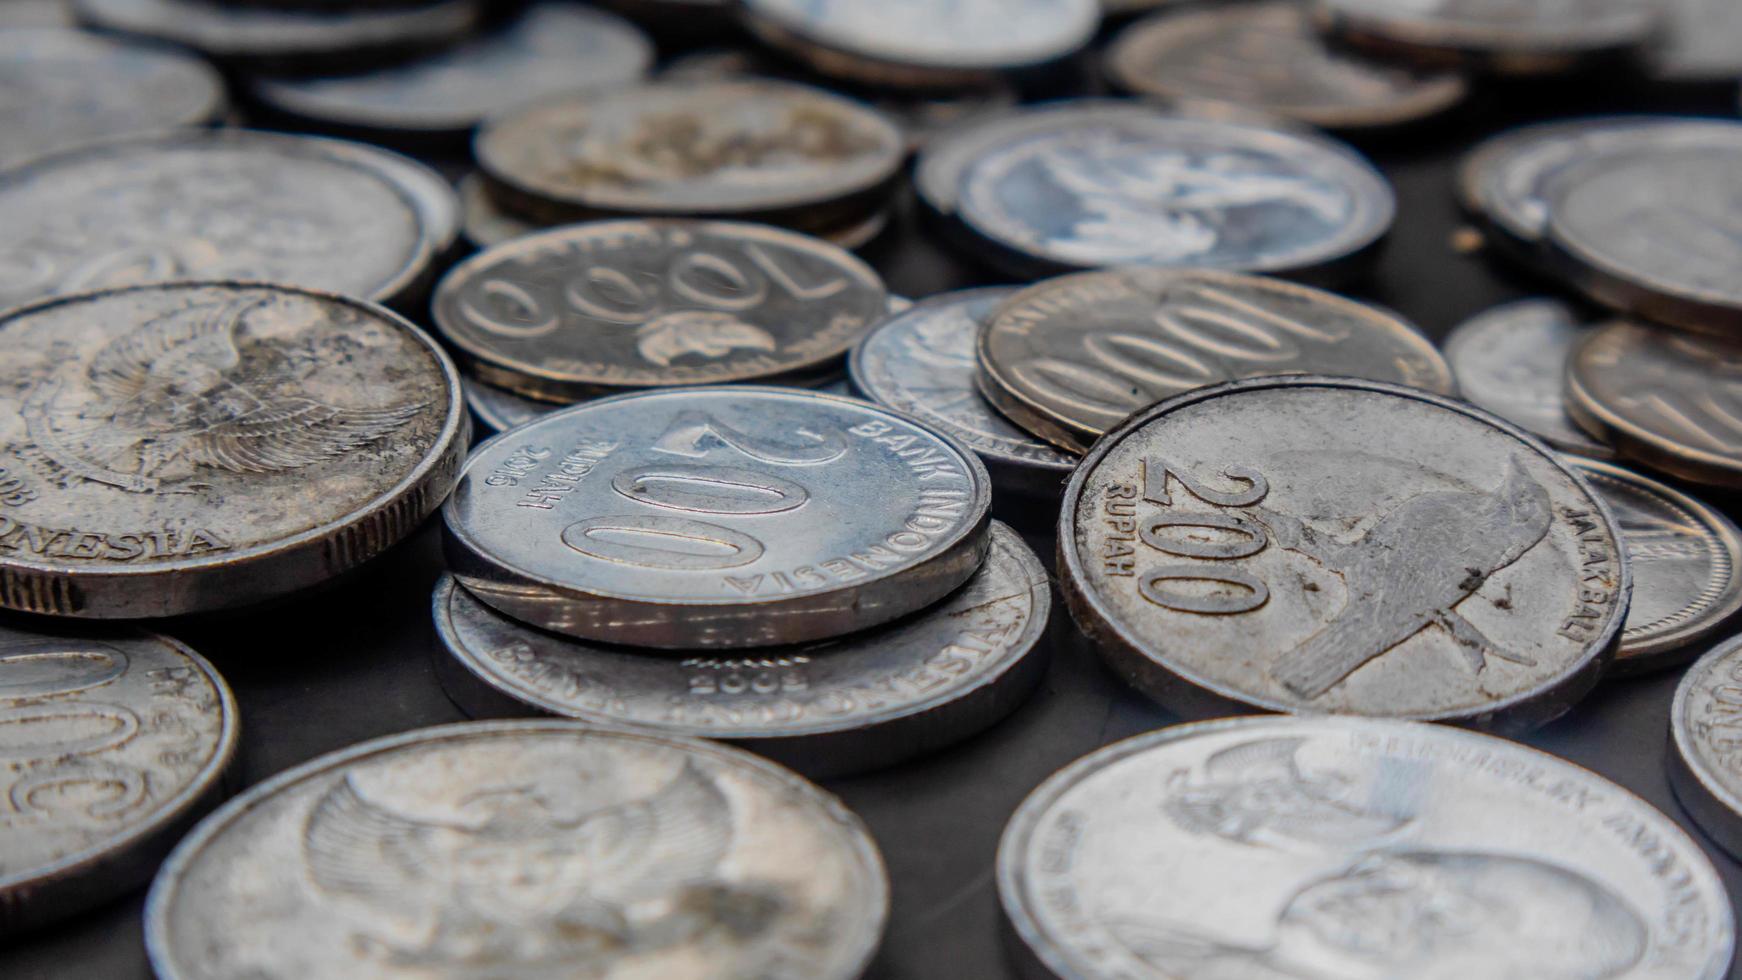 pila de monedas de rupias como fondo foto